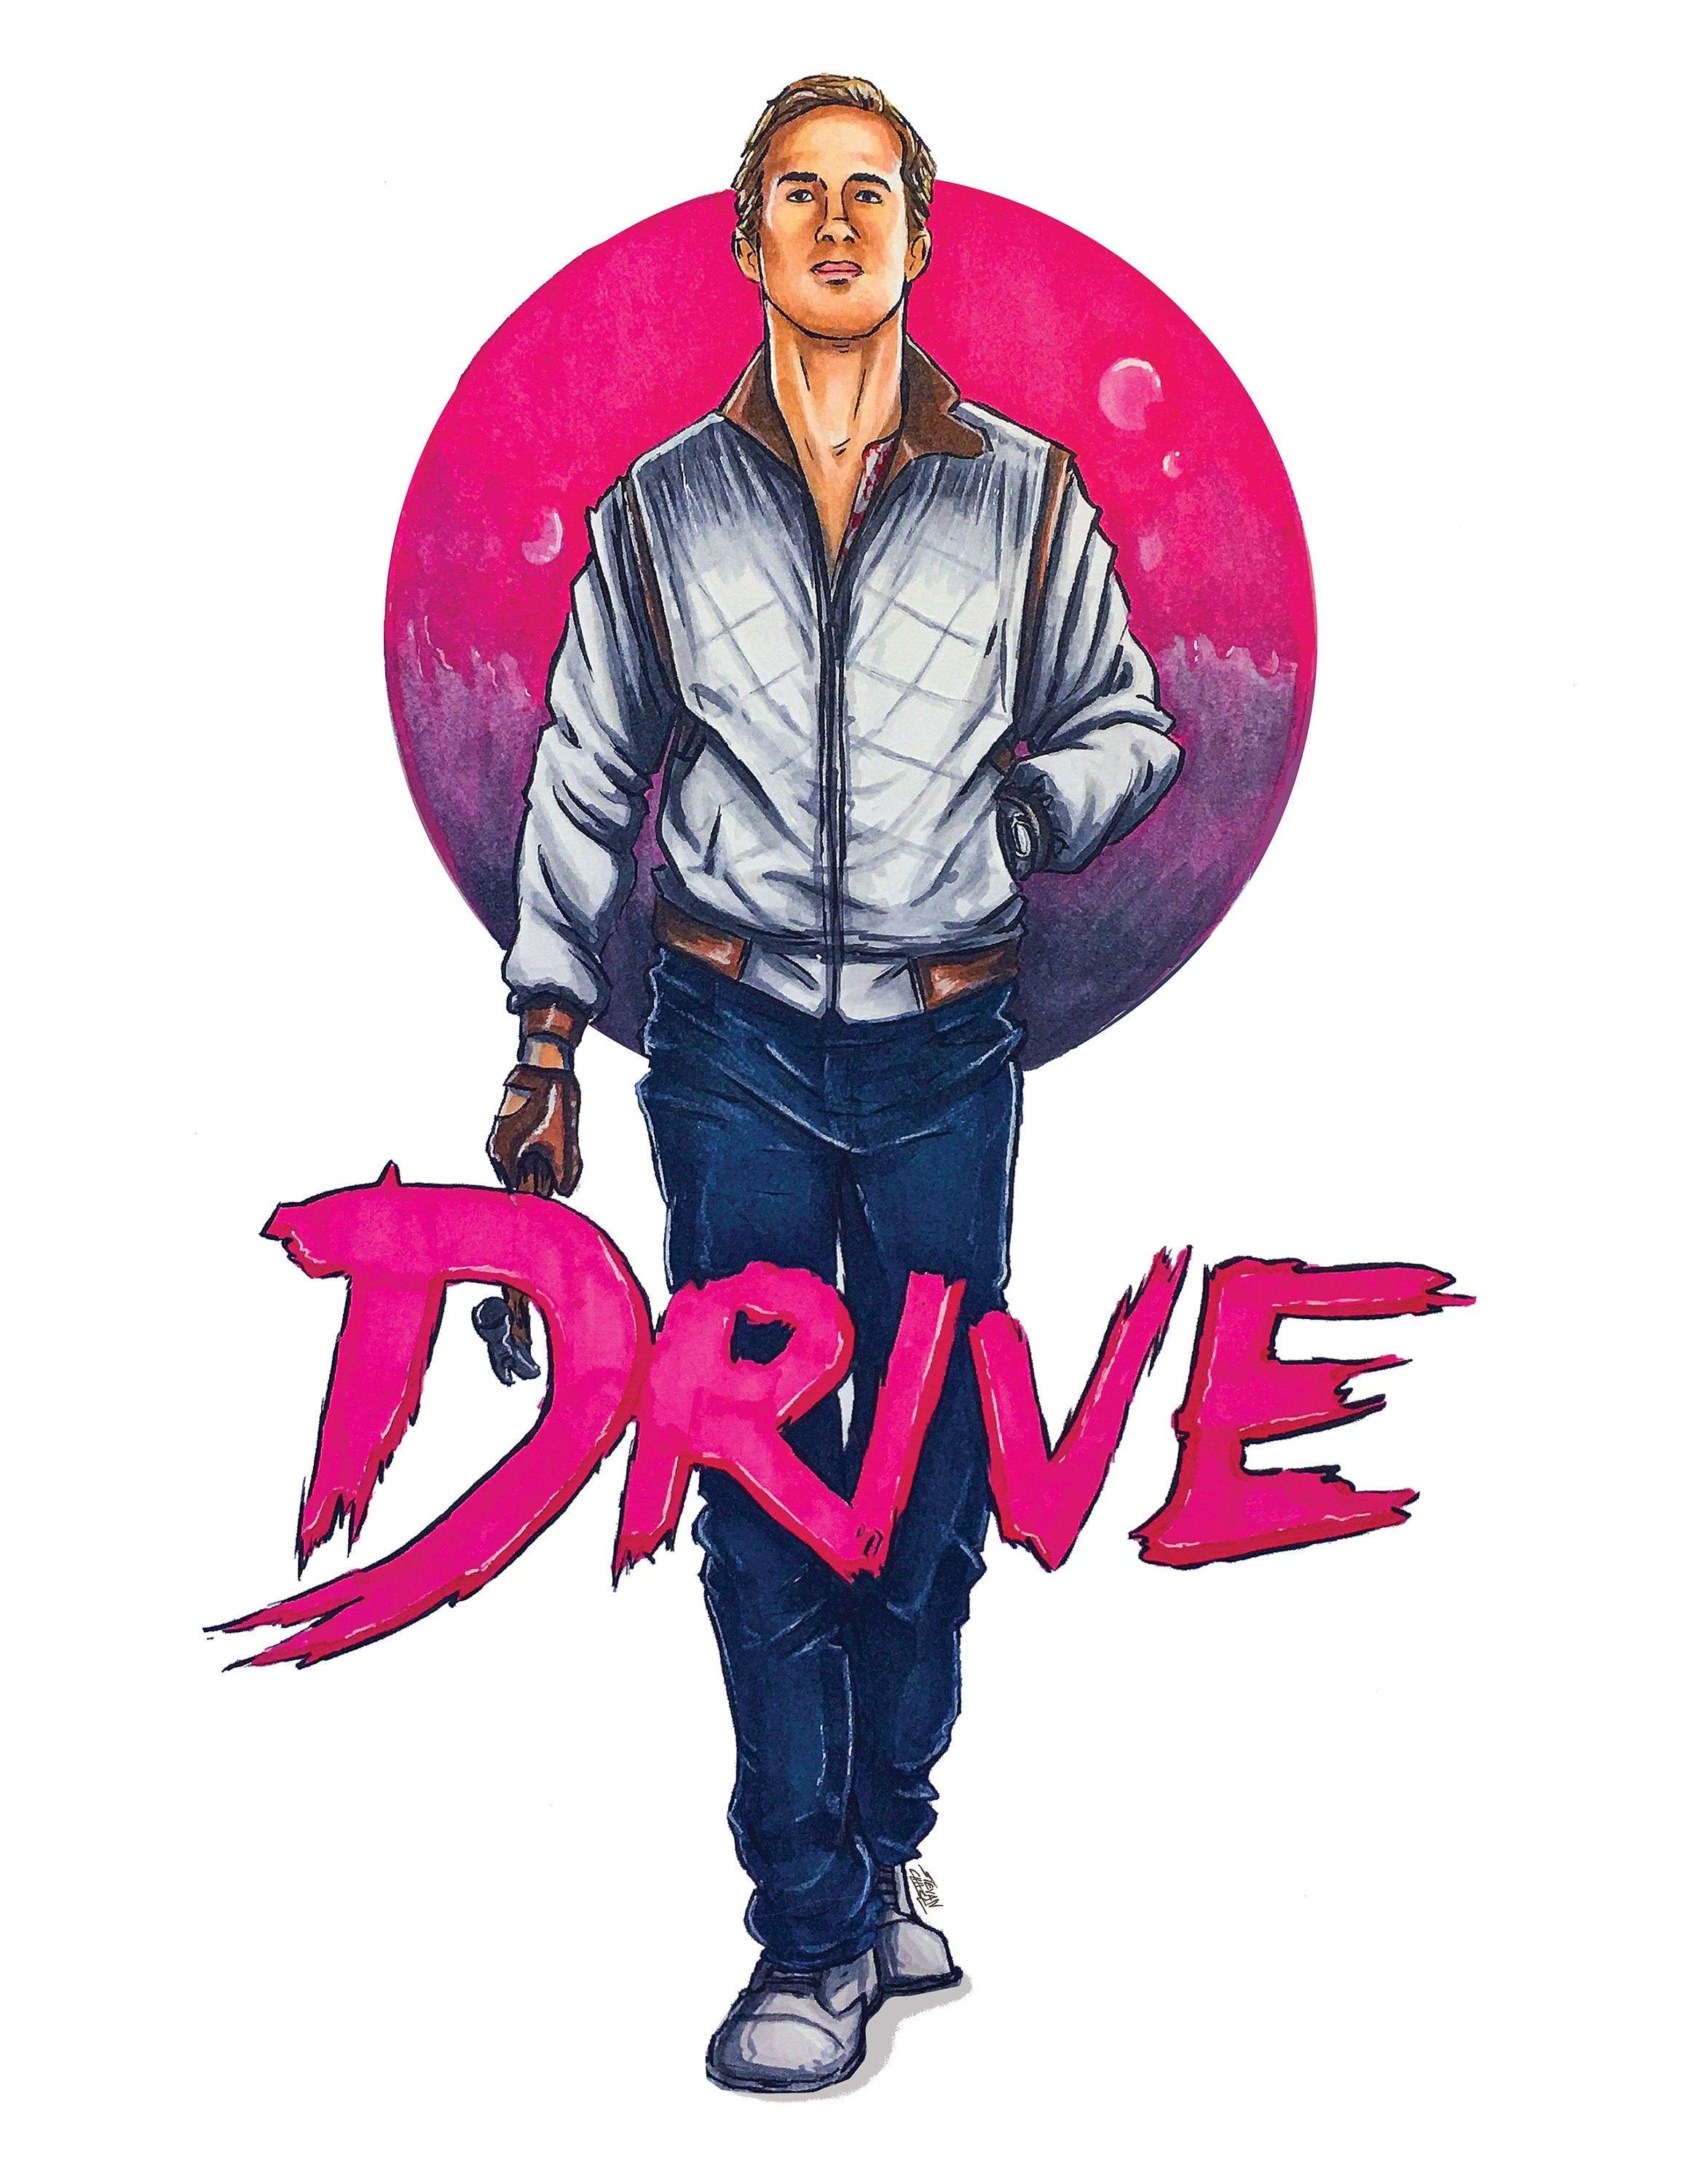 Ryan Gosling Movie Drive Ph 